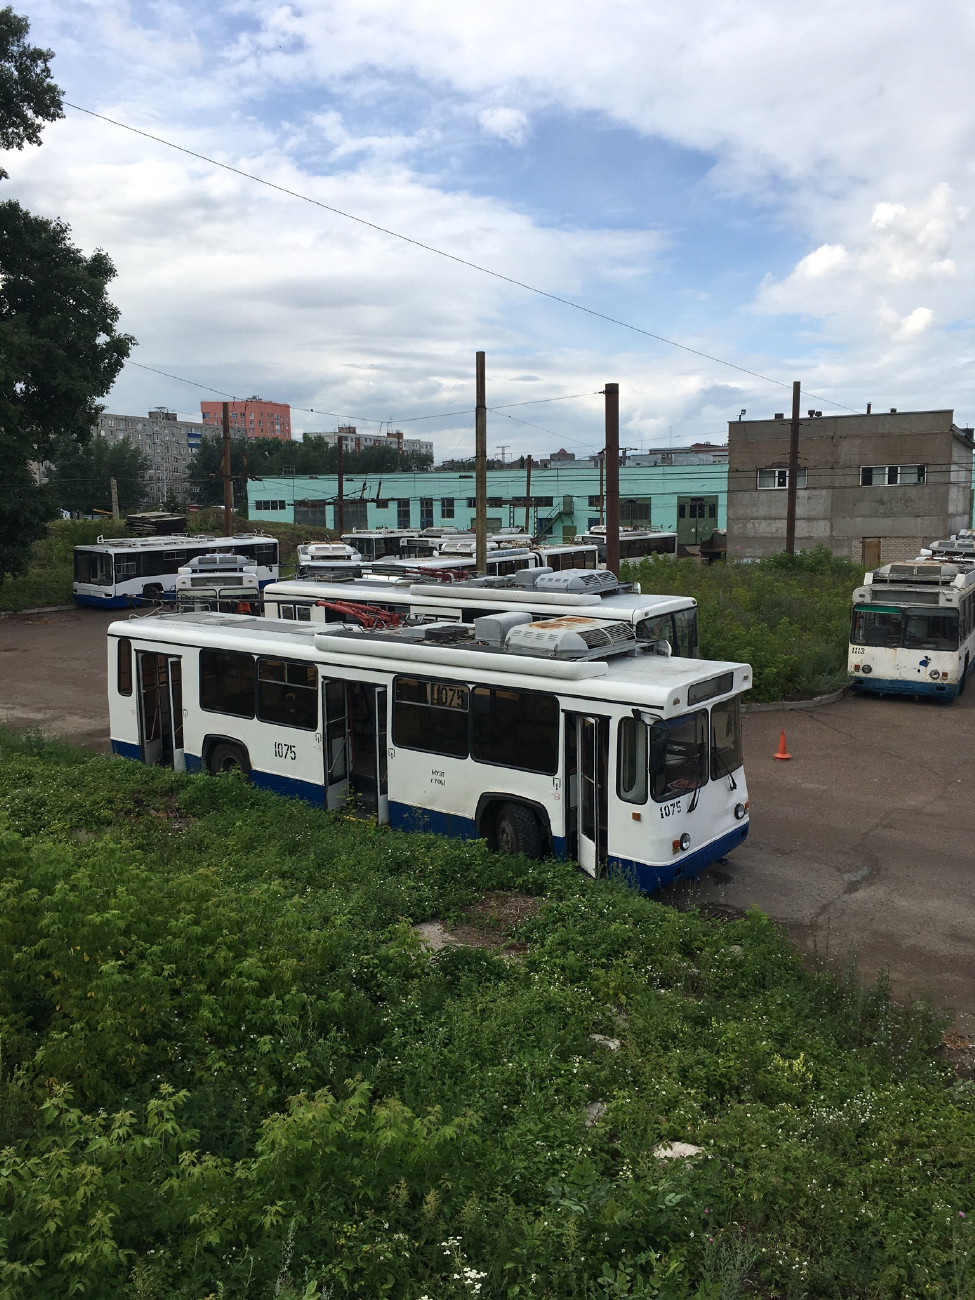 烏法, BTZ-52761T # 1030; 烏法 — Trolleybus Depot No. 1